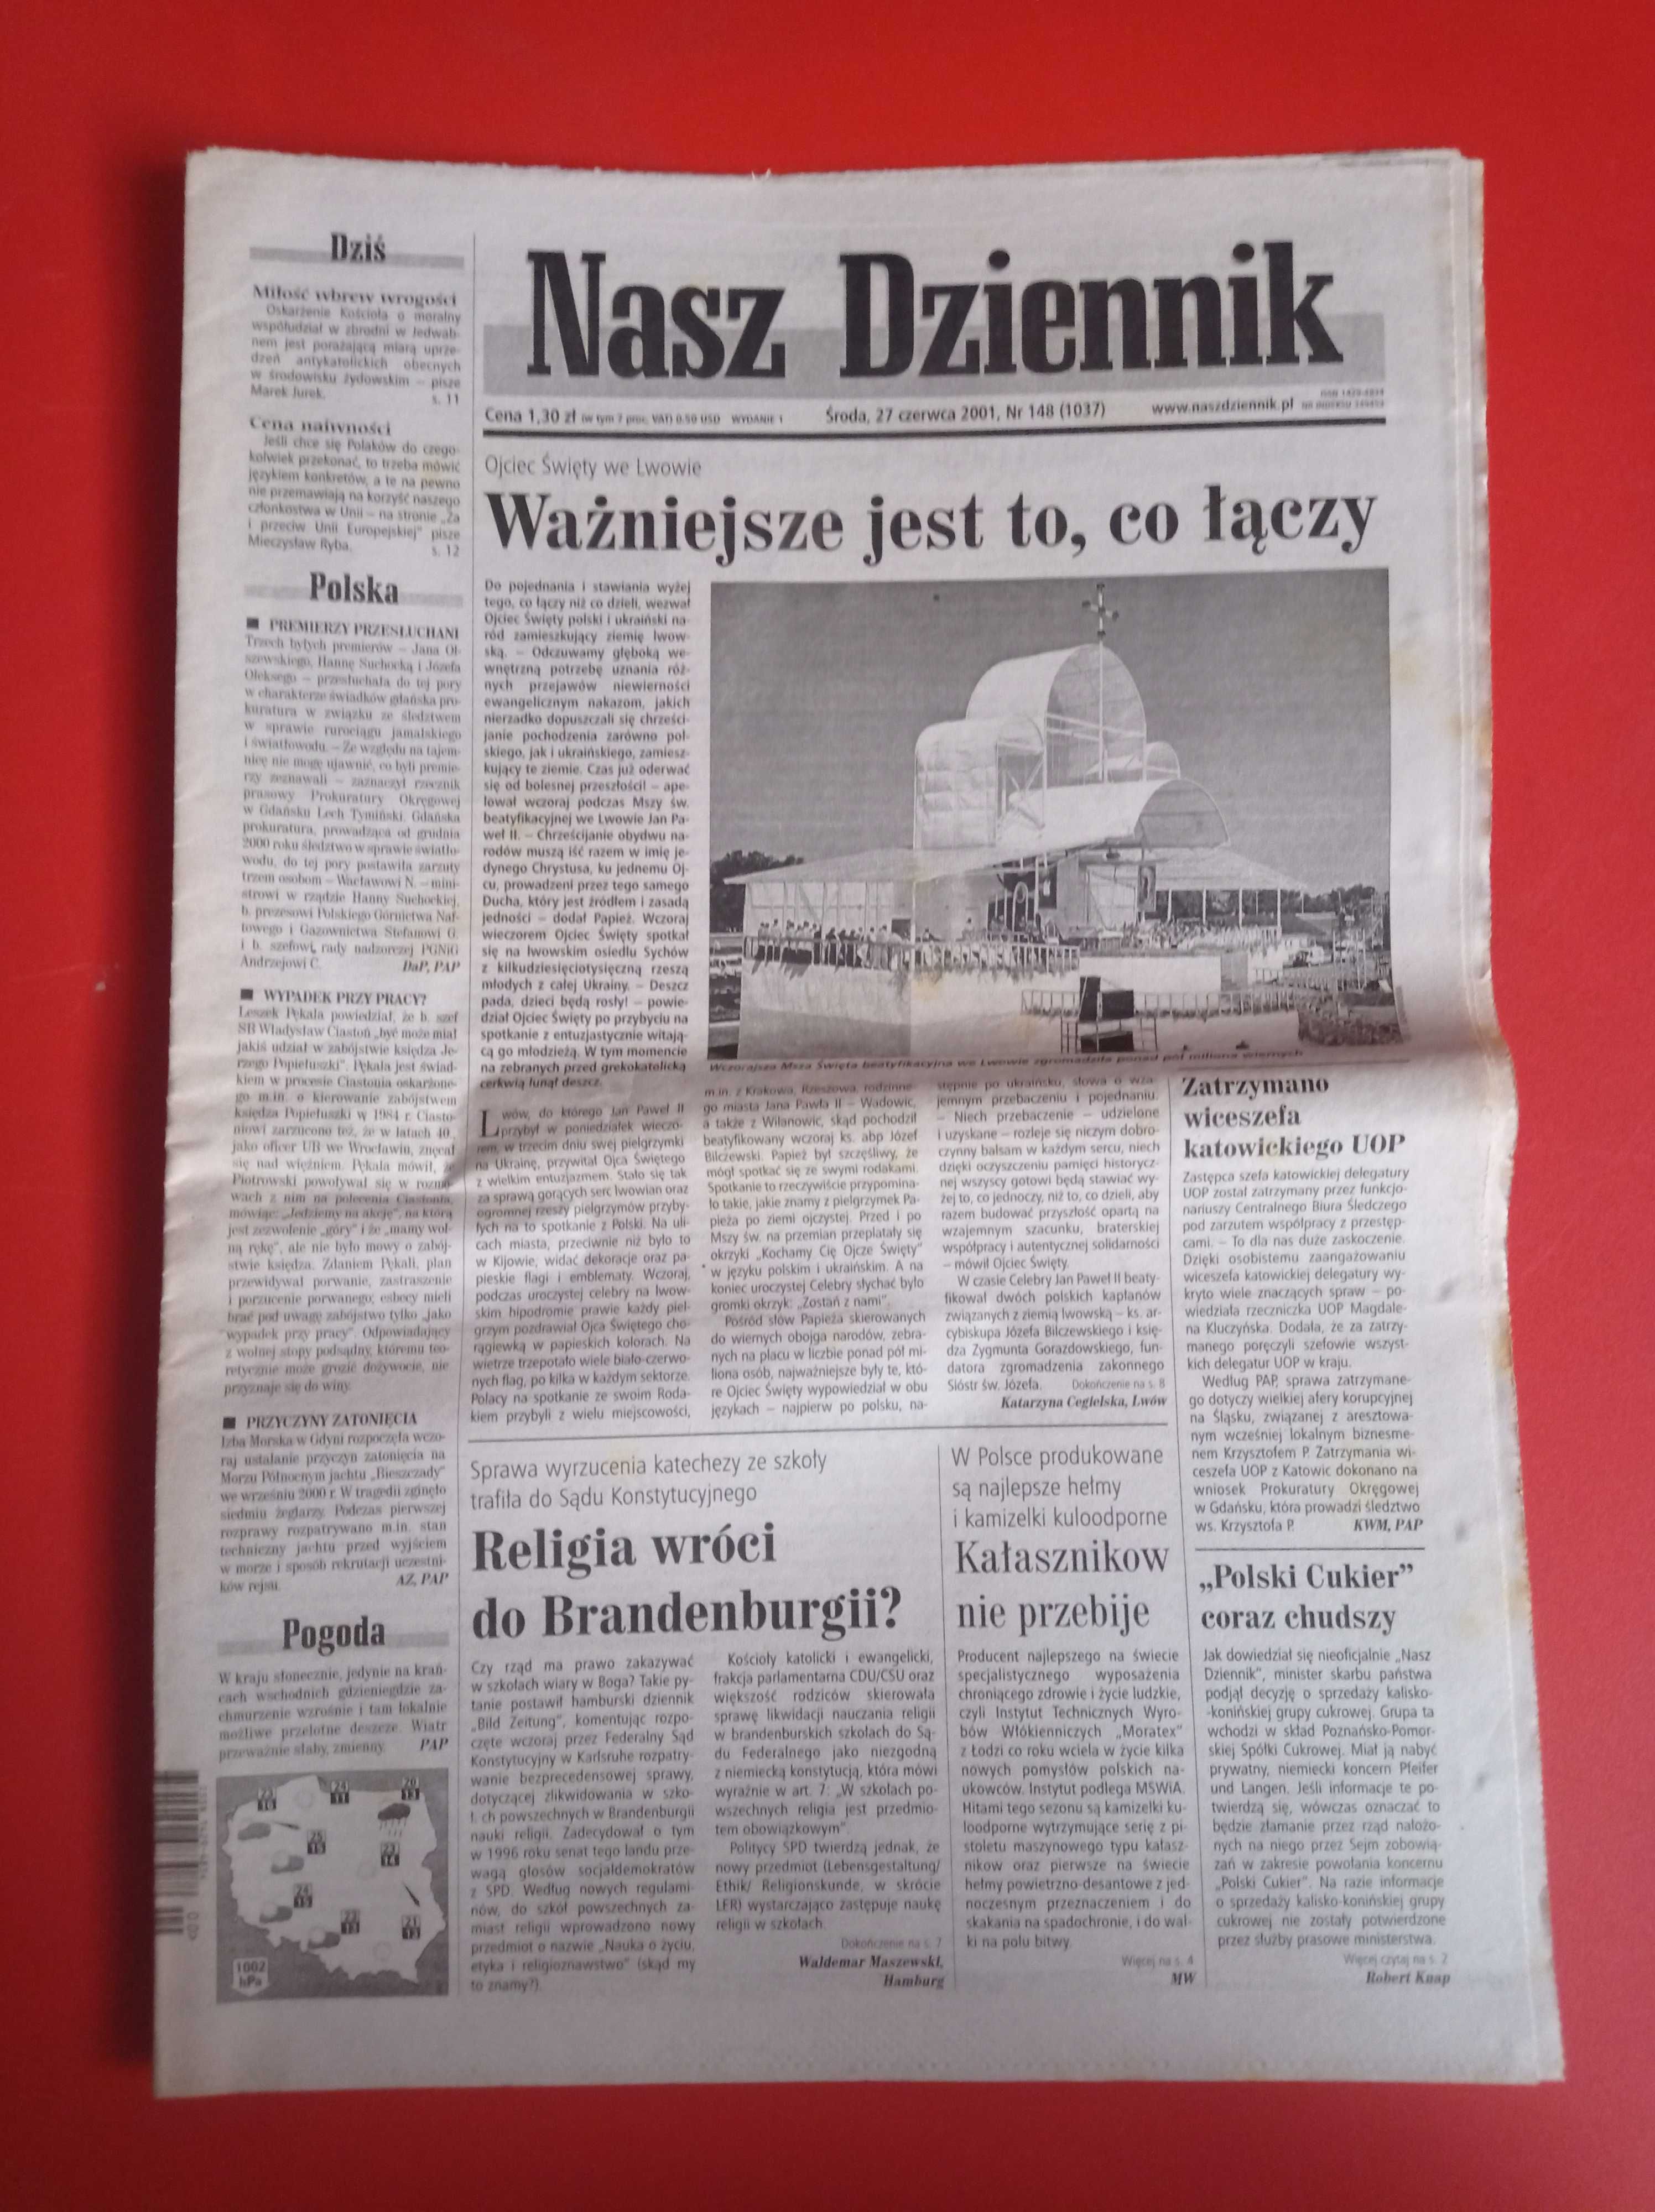 Nasz Dziennik, nr 148/2001, 27 czerwca 2001